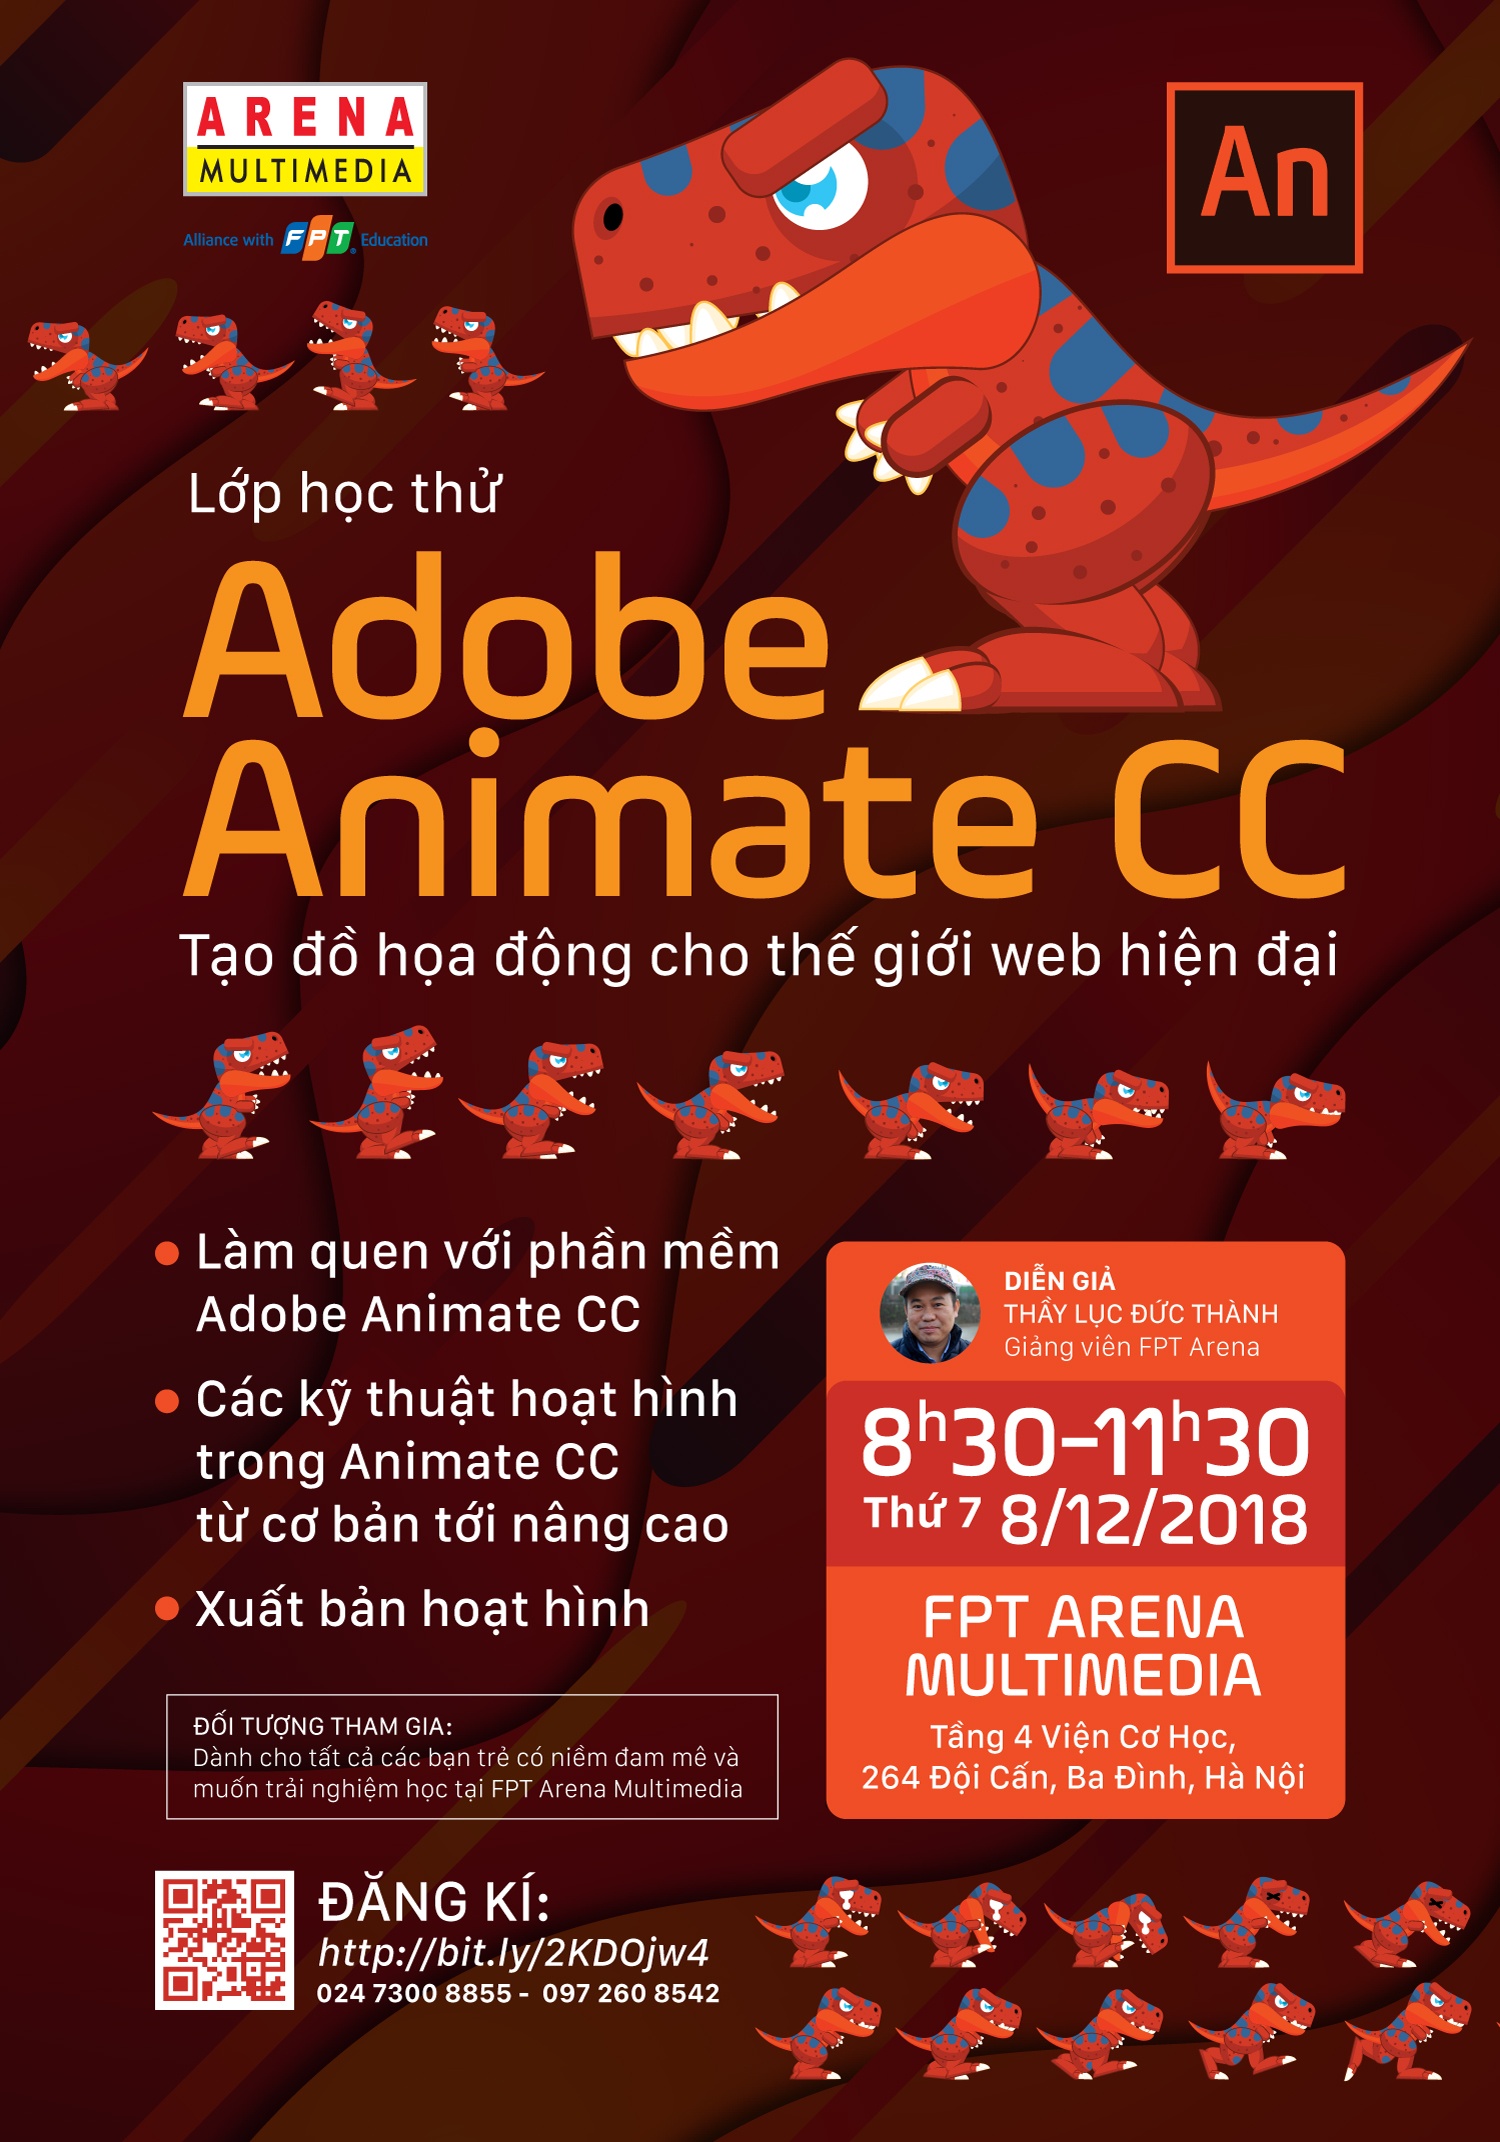 Adobe Animate CC - Phần mềm tạo đồ họa động cho trang web hiện đại